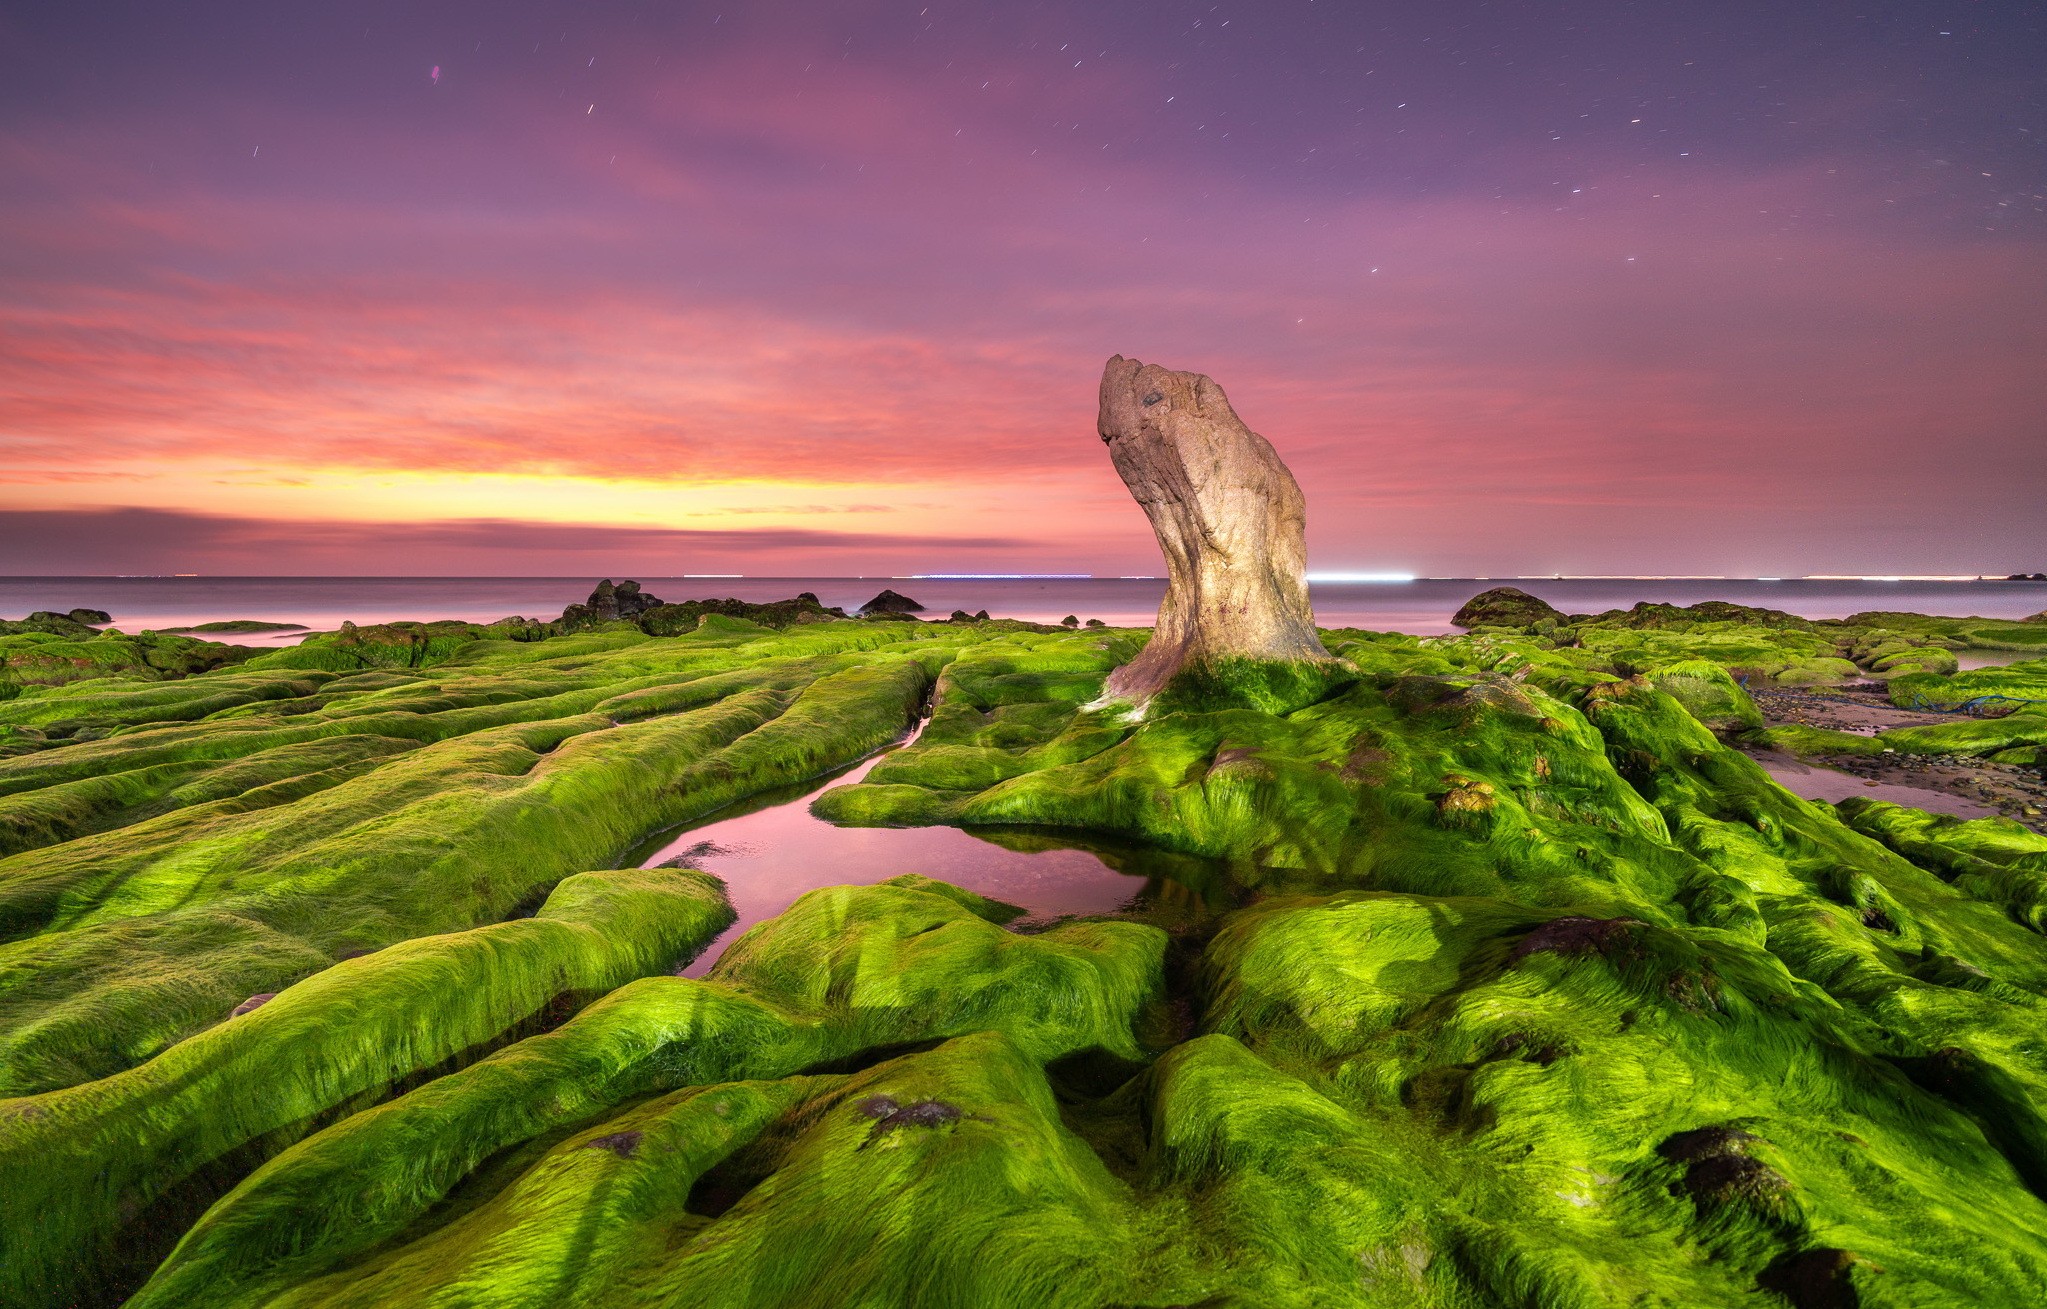 General 2047x1309 sea nature purple sky sunset rocks seaweed dusk landscape